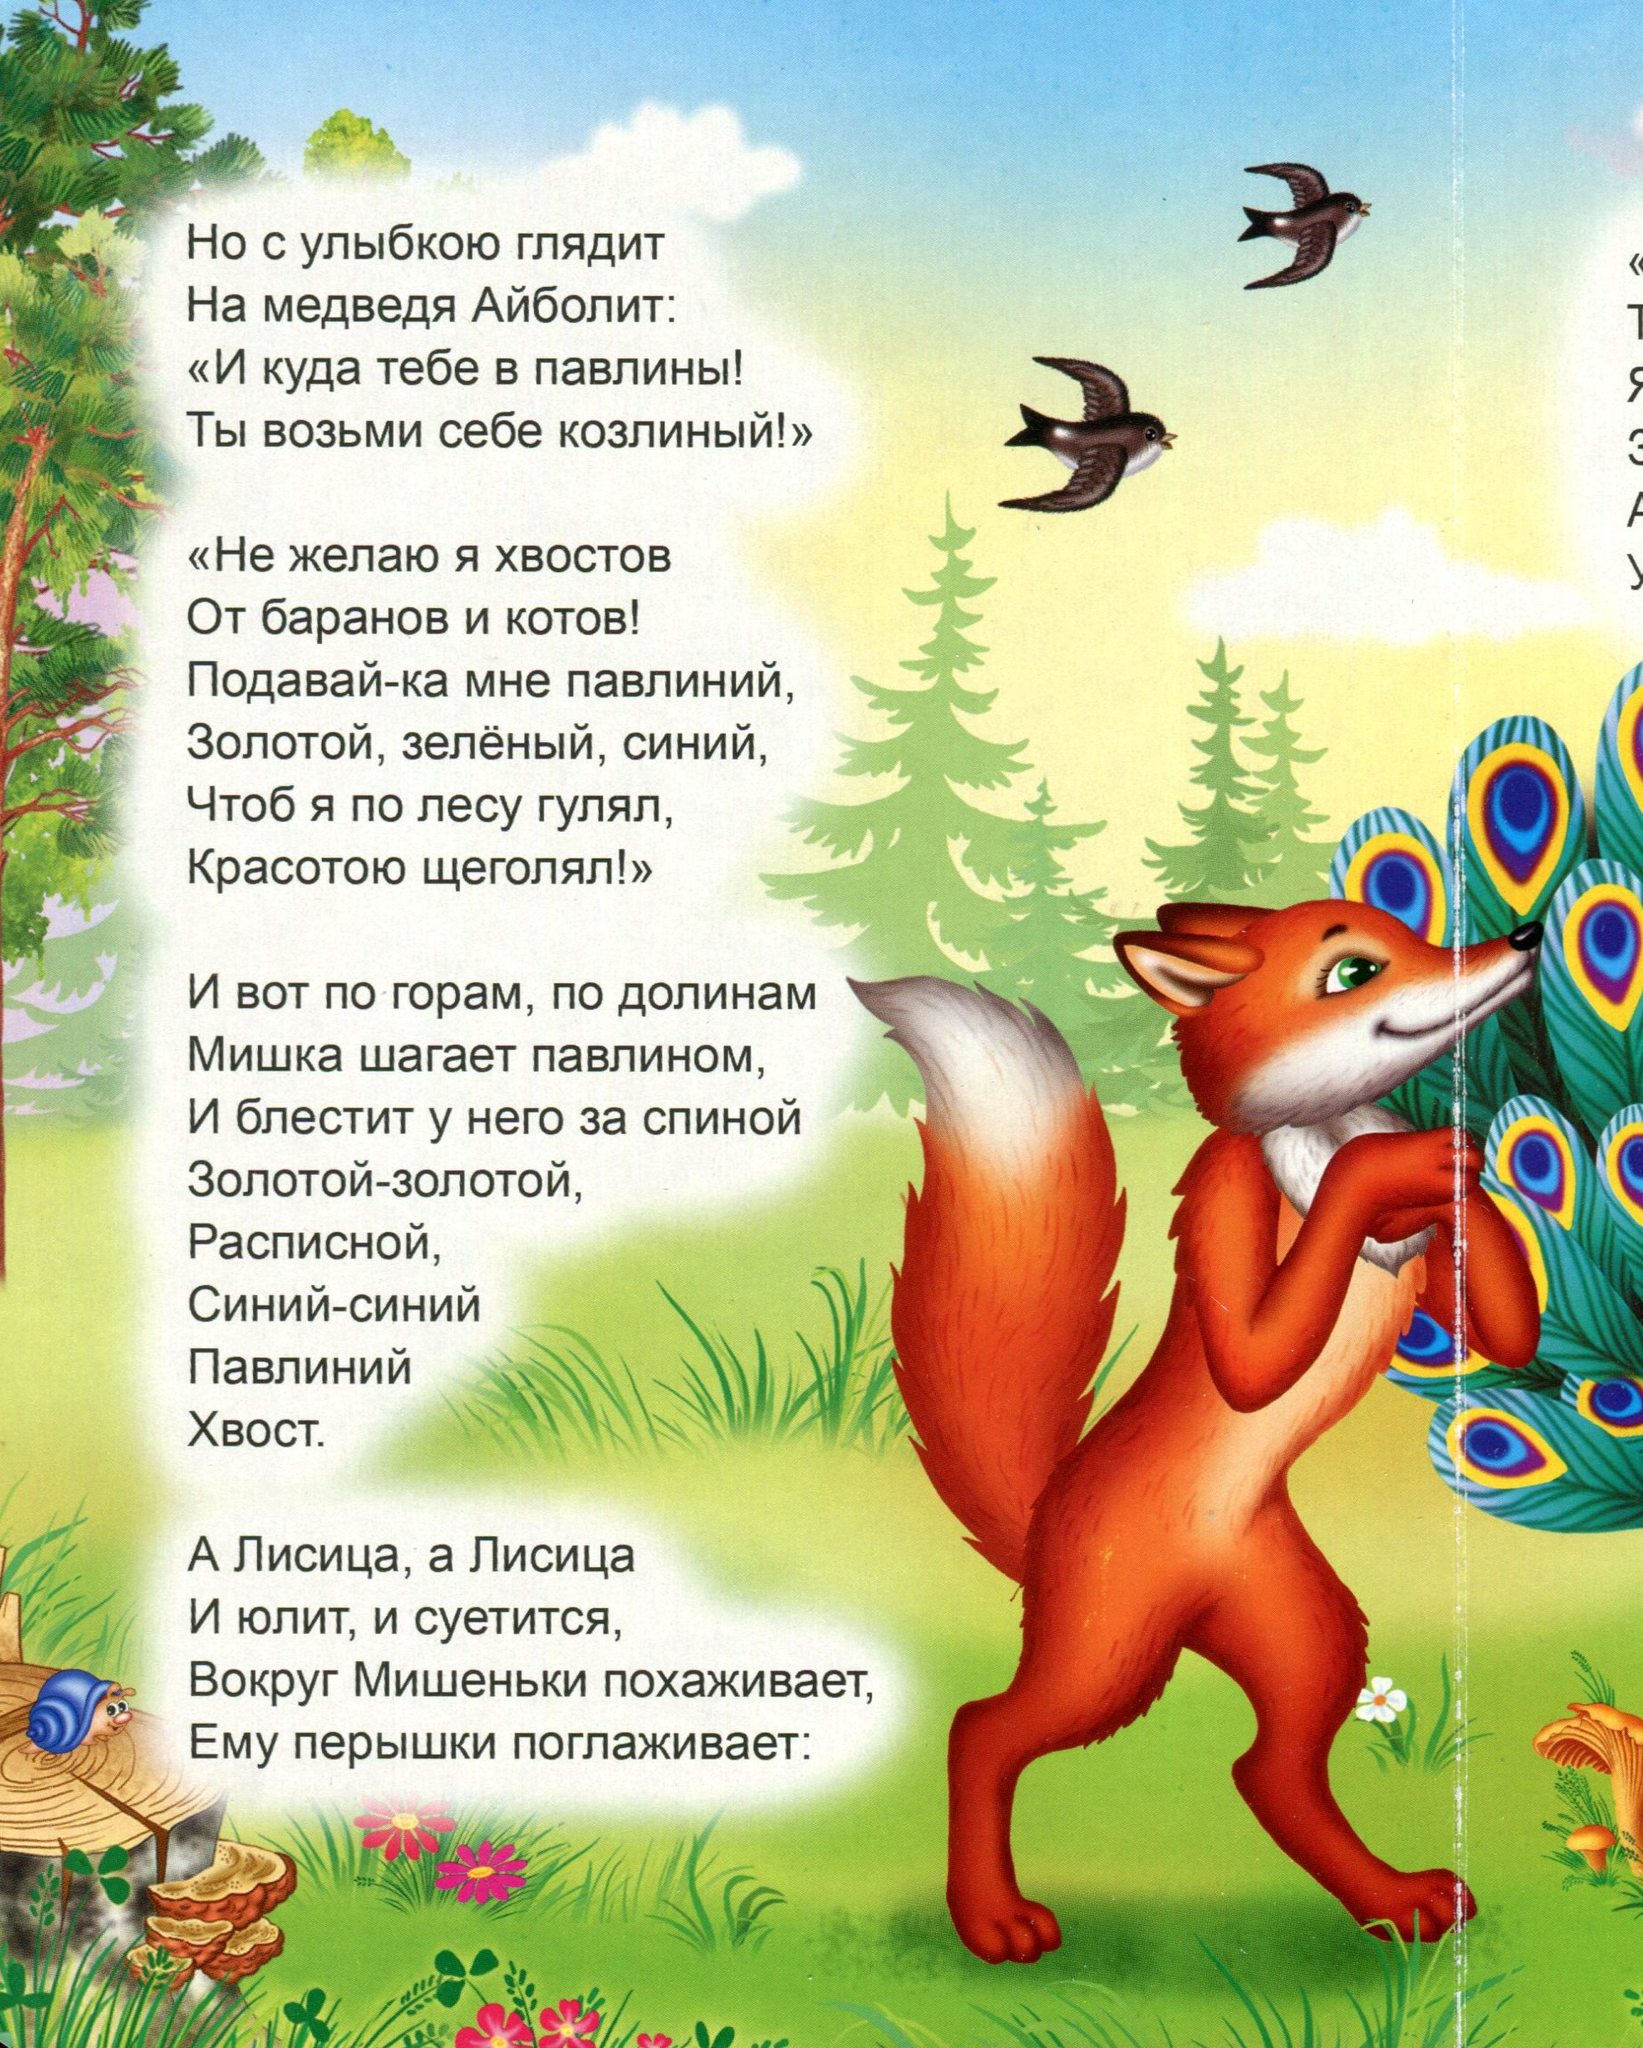 Топтыгин и лиса - читать сказку чуковского